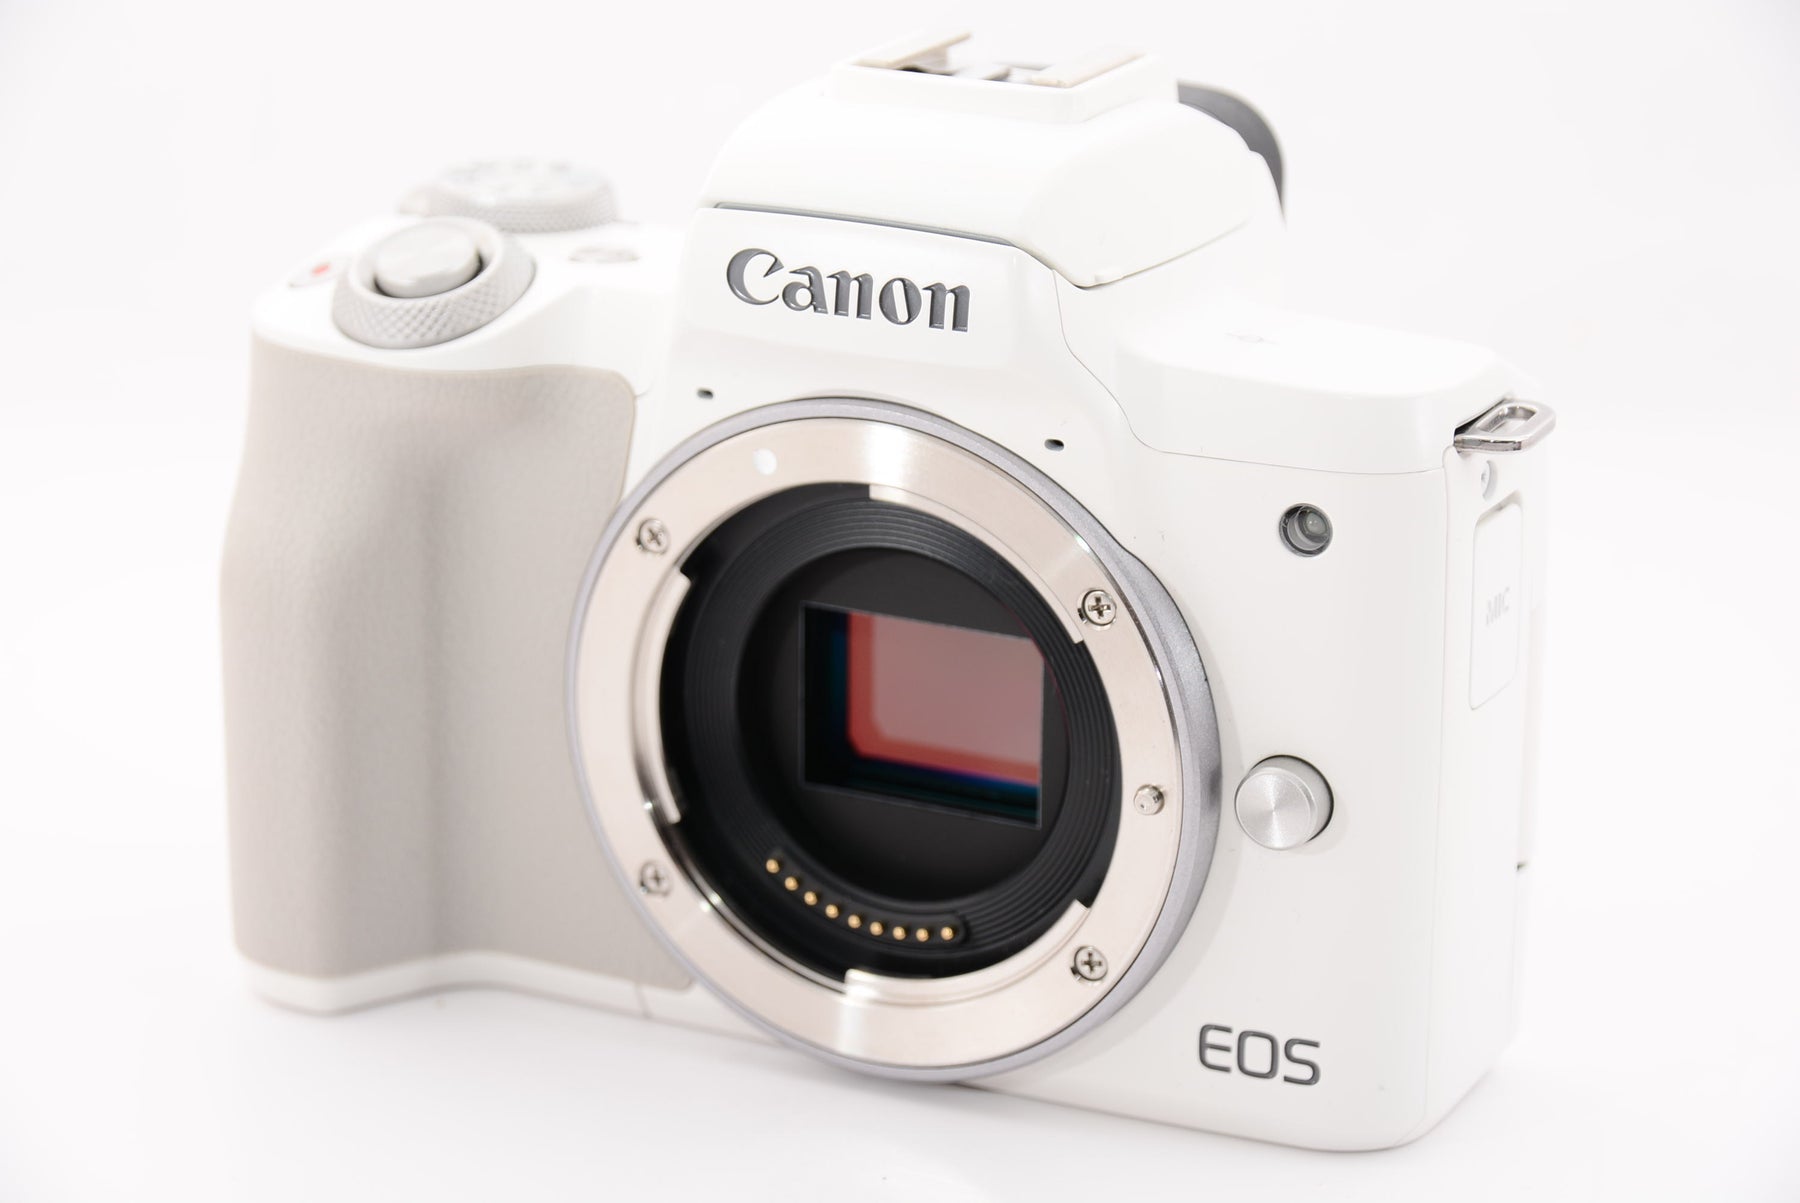 Canon ミラーレス一眼カメラ EOS Kiss M2 ボディー ホワイト KISSM2WH